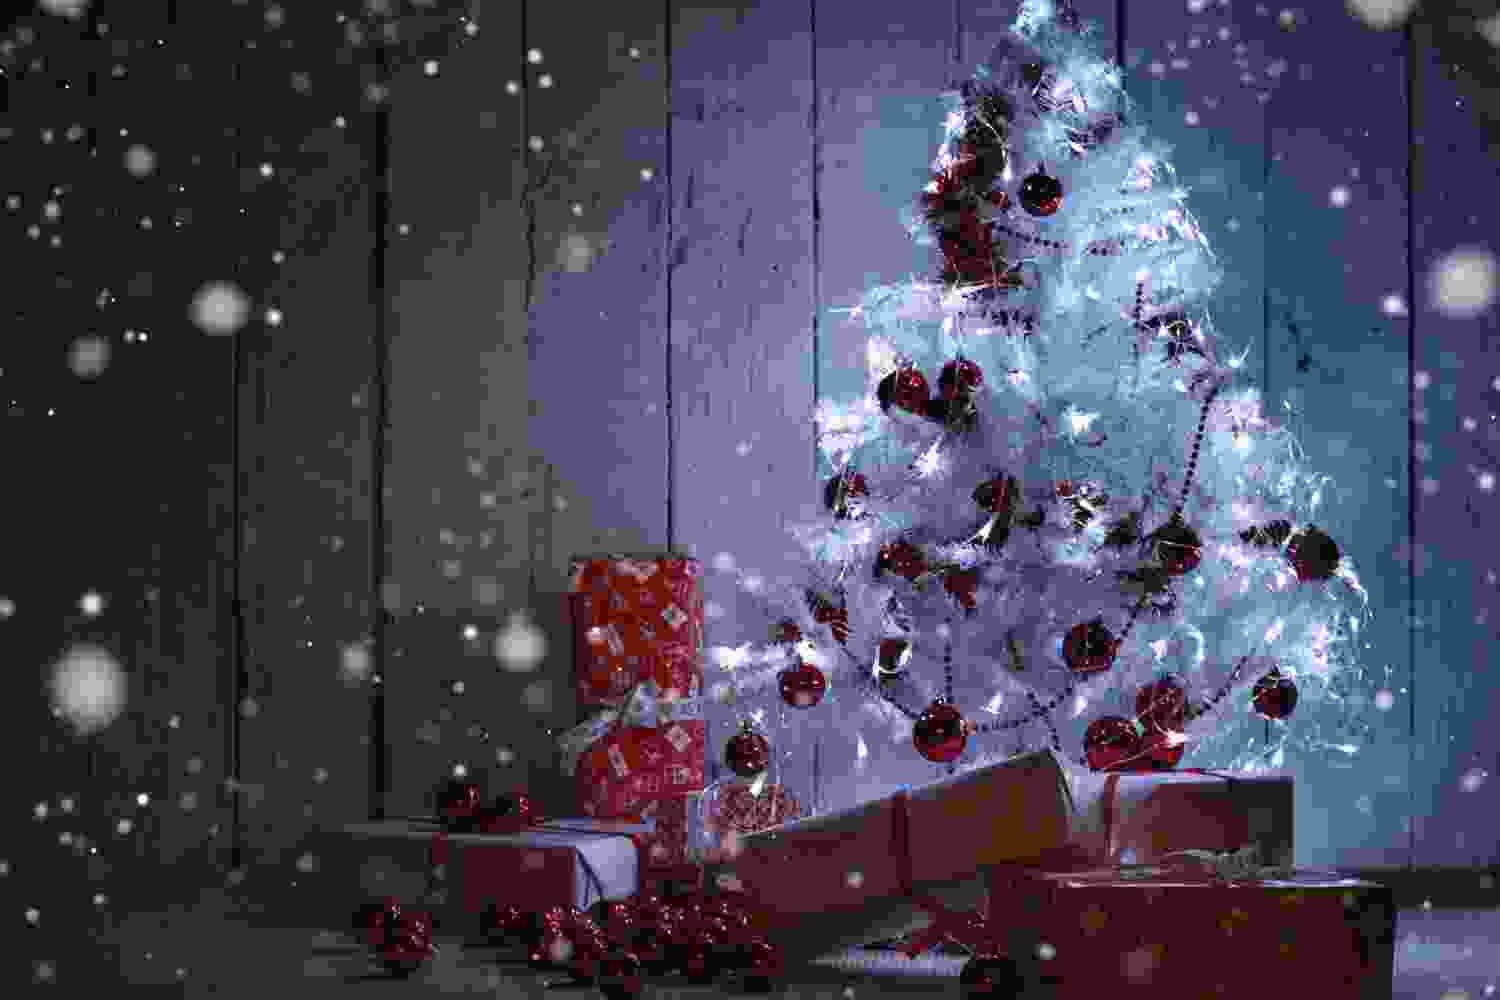 Tải hình nền giáng sinh cho máy tính - Tải hình nền Noel đẹp nhất |  Christmas desktop, Christmas desktop wallpaper, Christmas wallpaper free